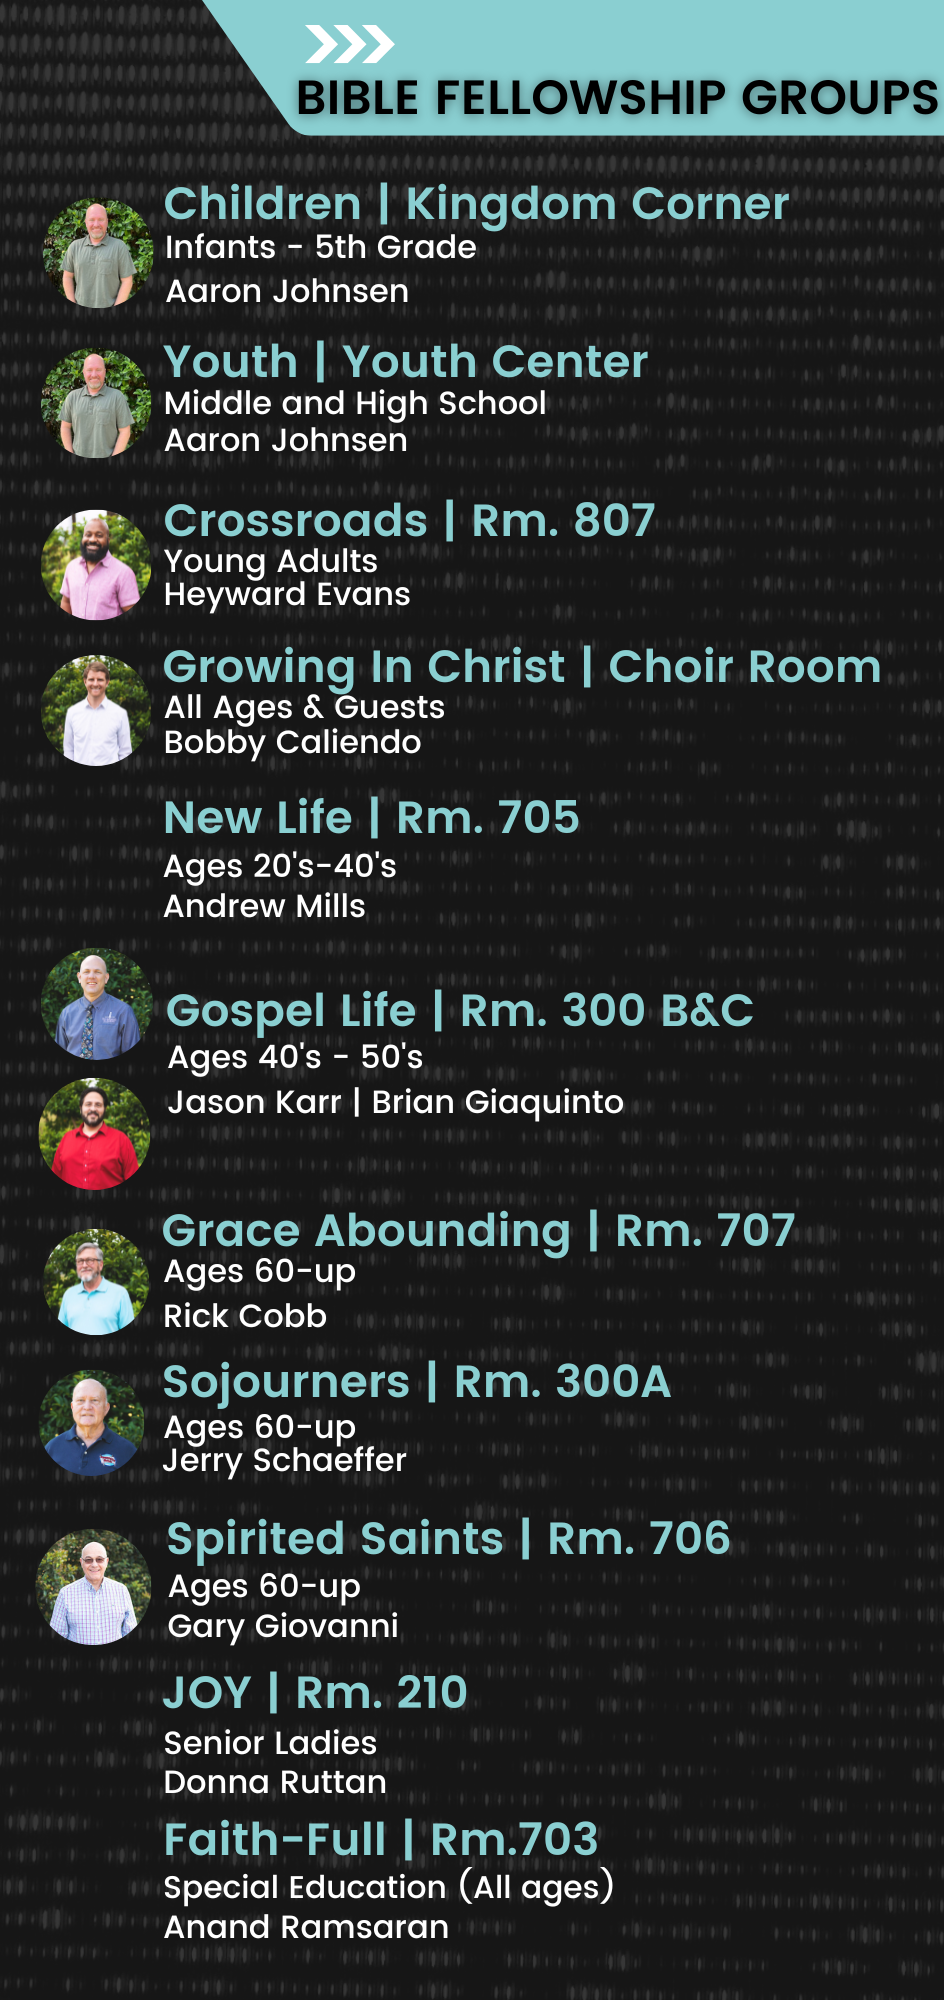 Bible Fellowship Groups website list-2